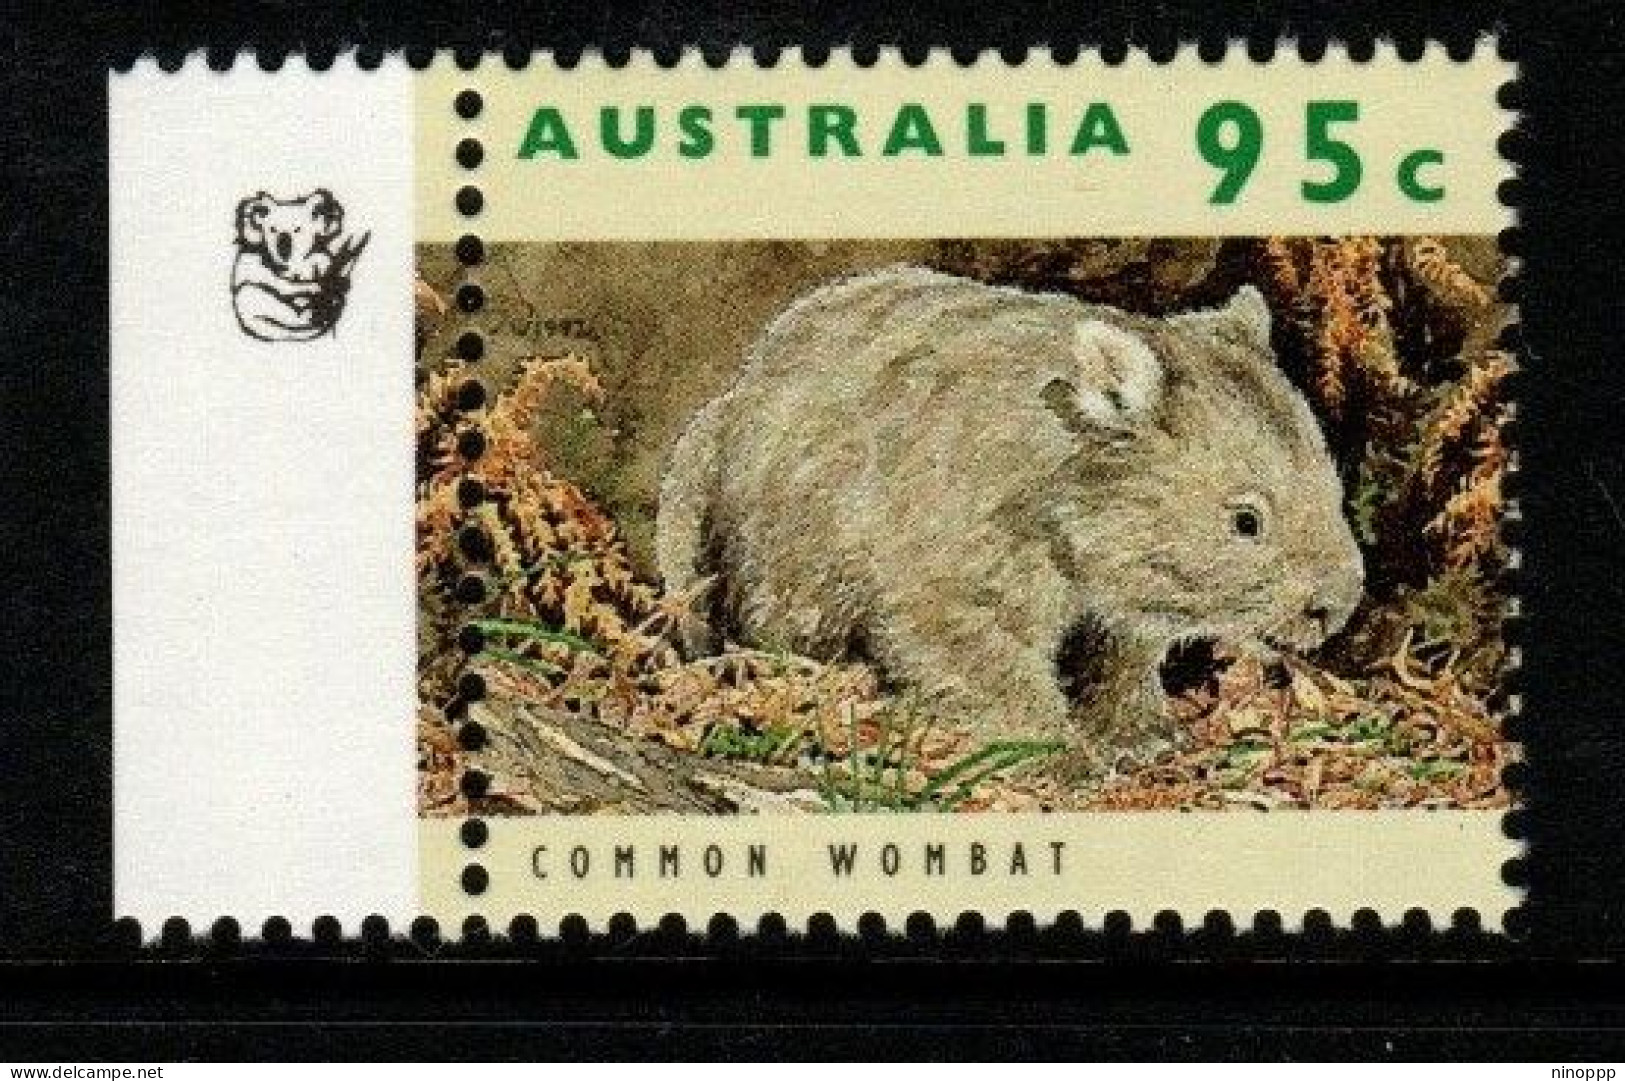 Australia Cat 1361a Wildlife  95c Common Wombat  , 1 Koalas Reprint,mint Never Hinged - Essais & Réimpressions